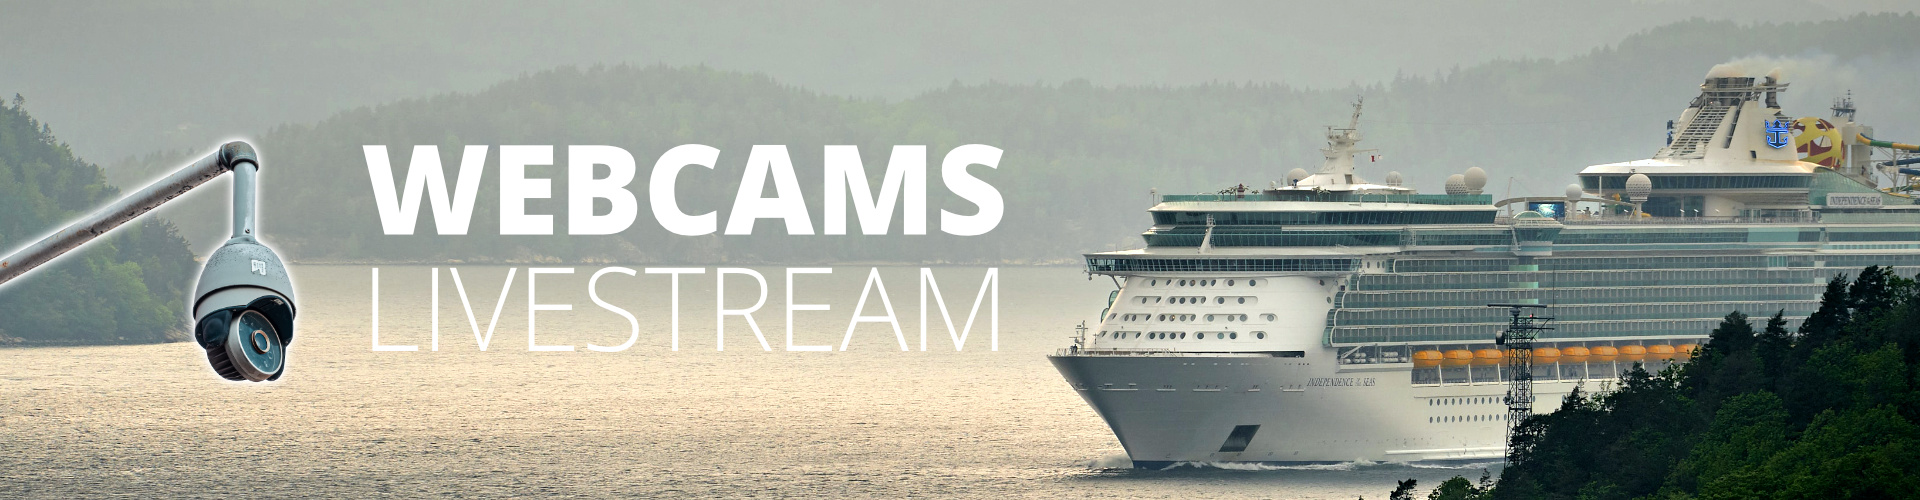 Kreuzfahrtschiff Webcams und Livestream